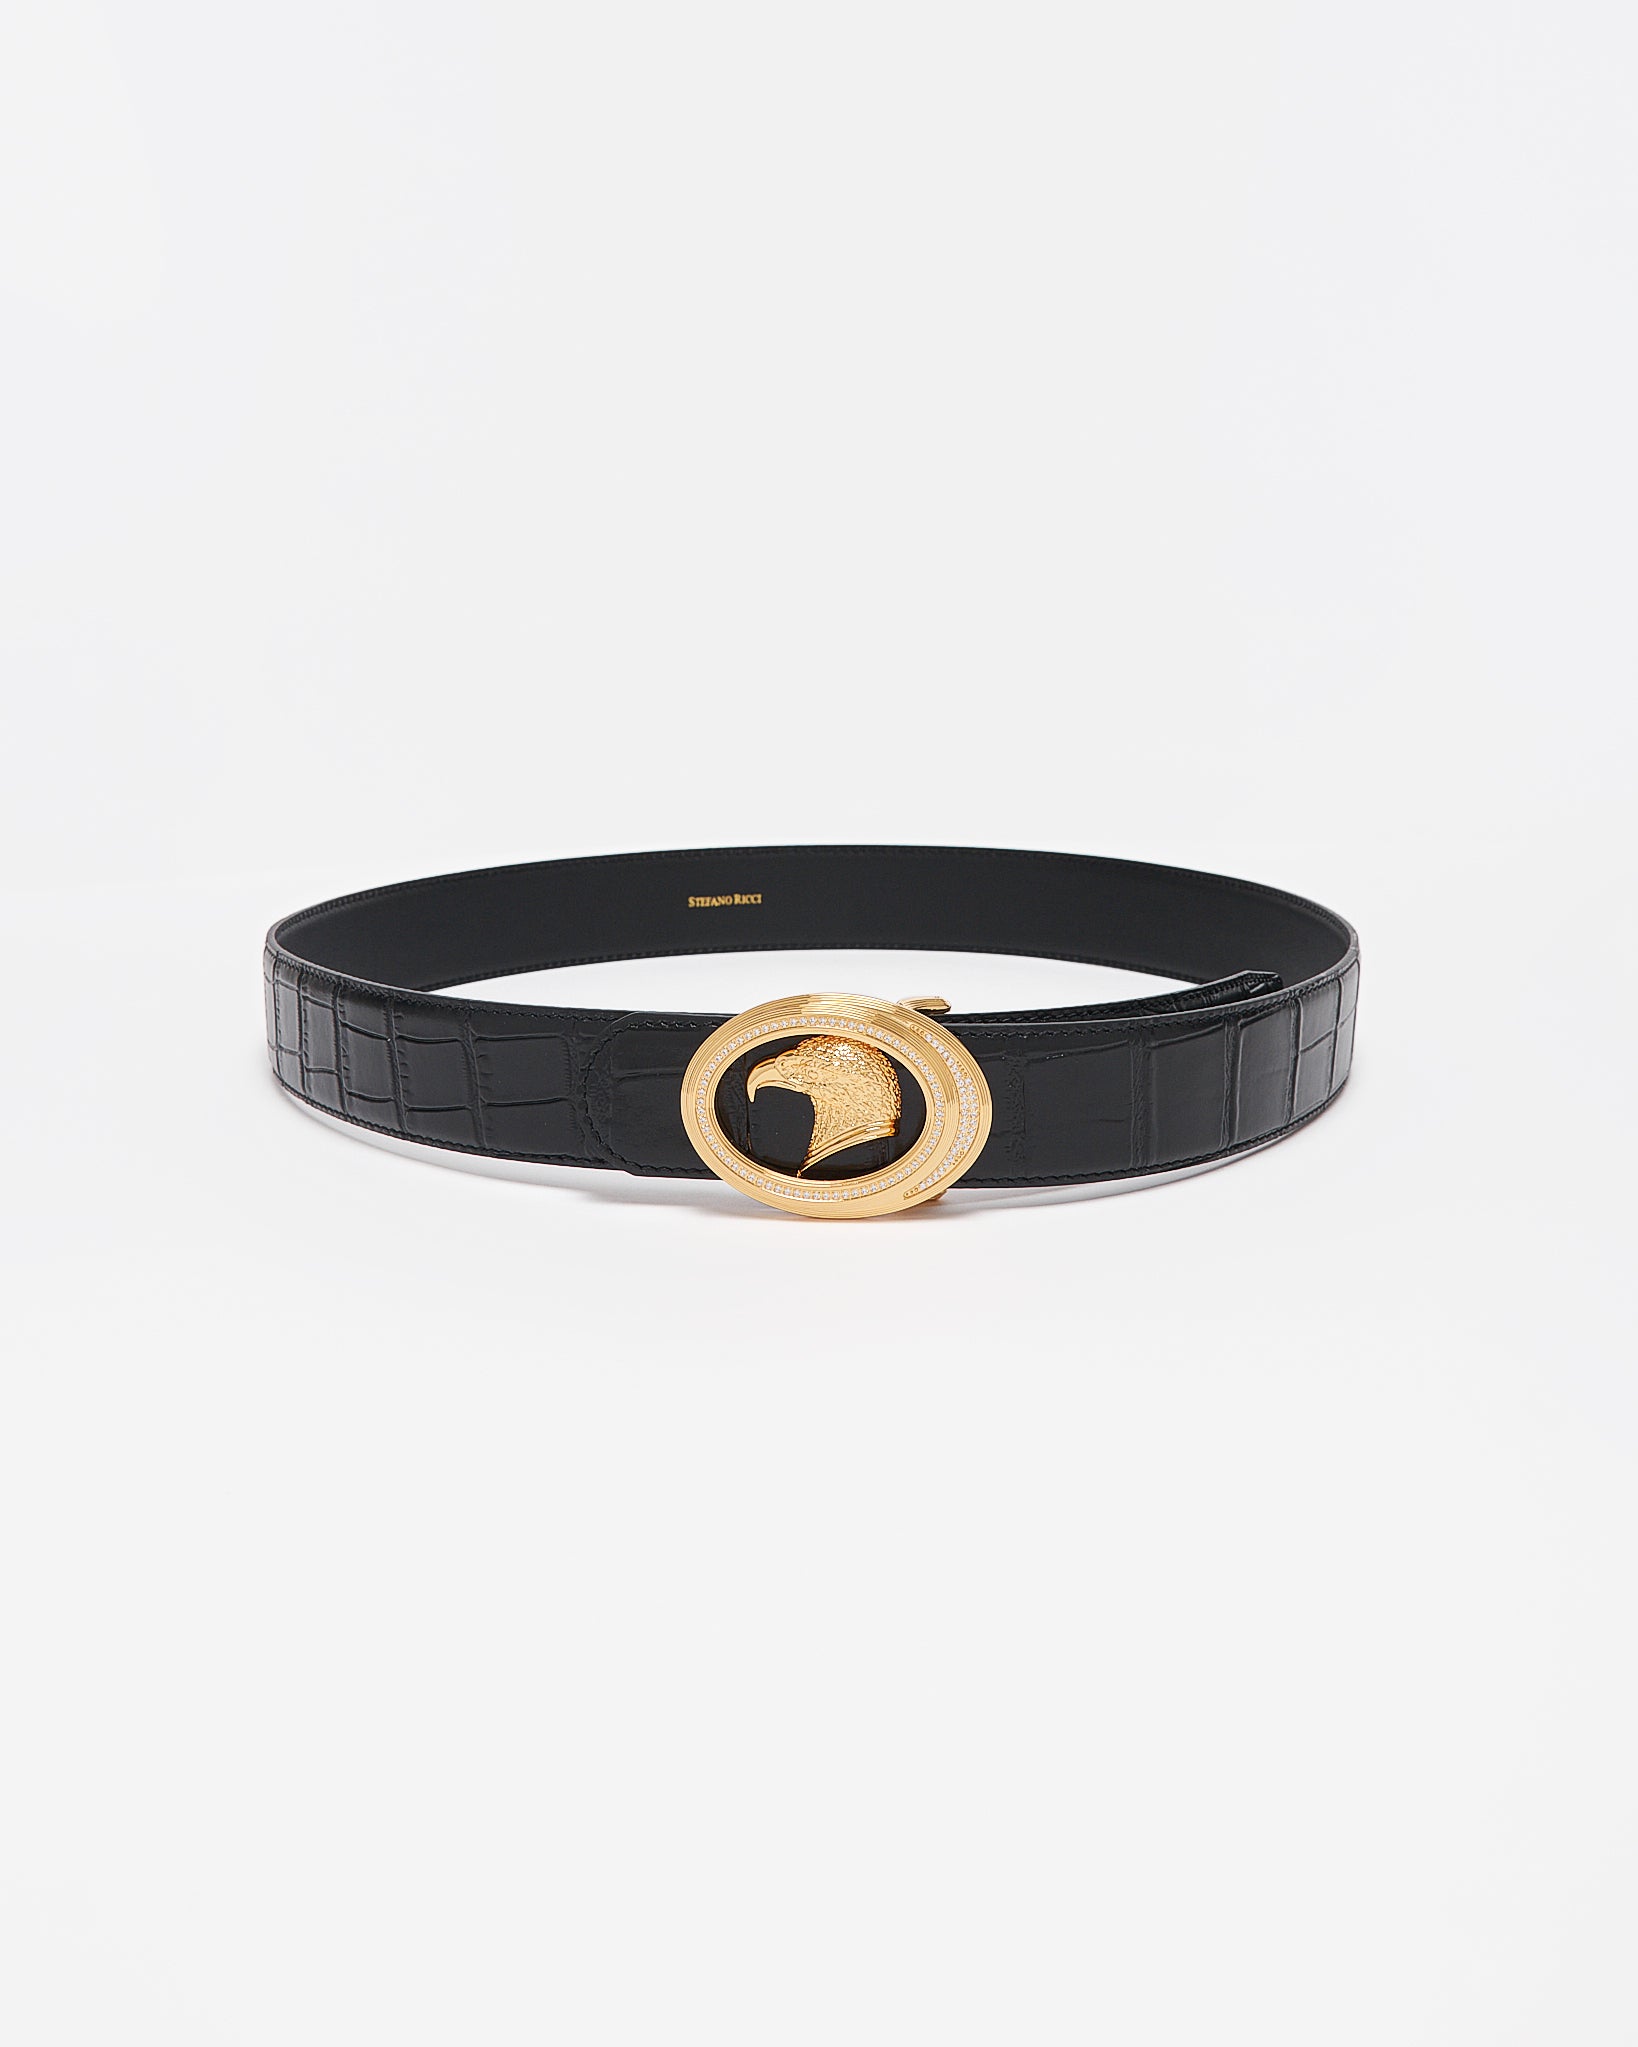 SR Gold Logo Men Black Leather Belt 109.90